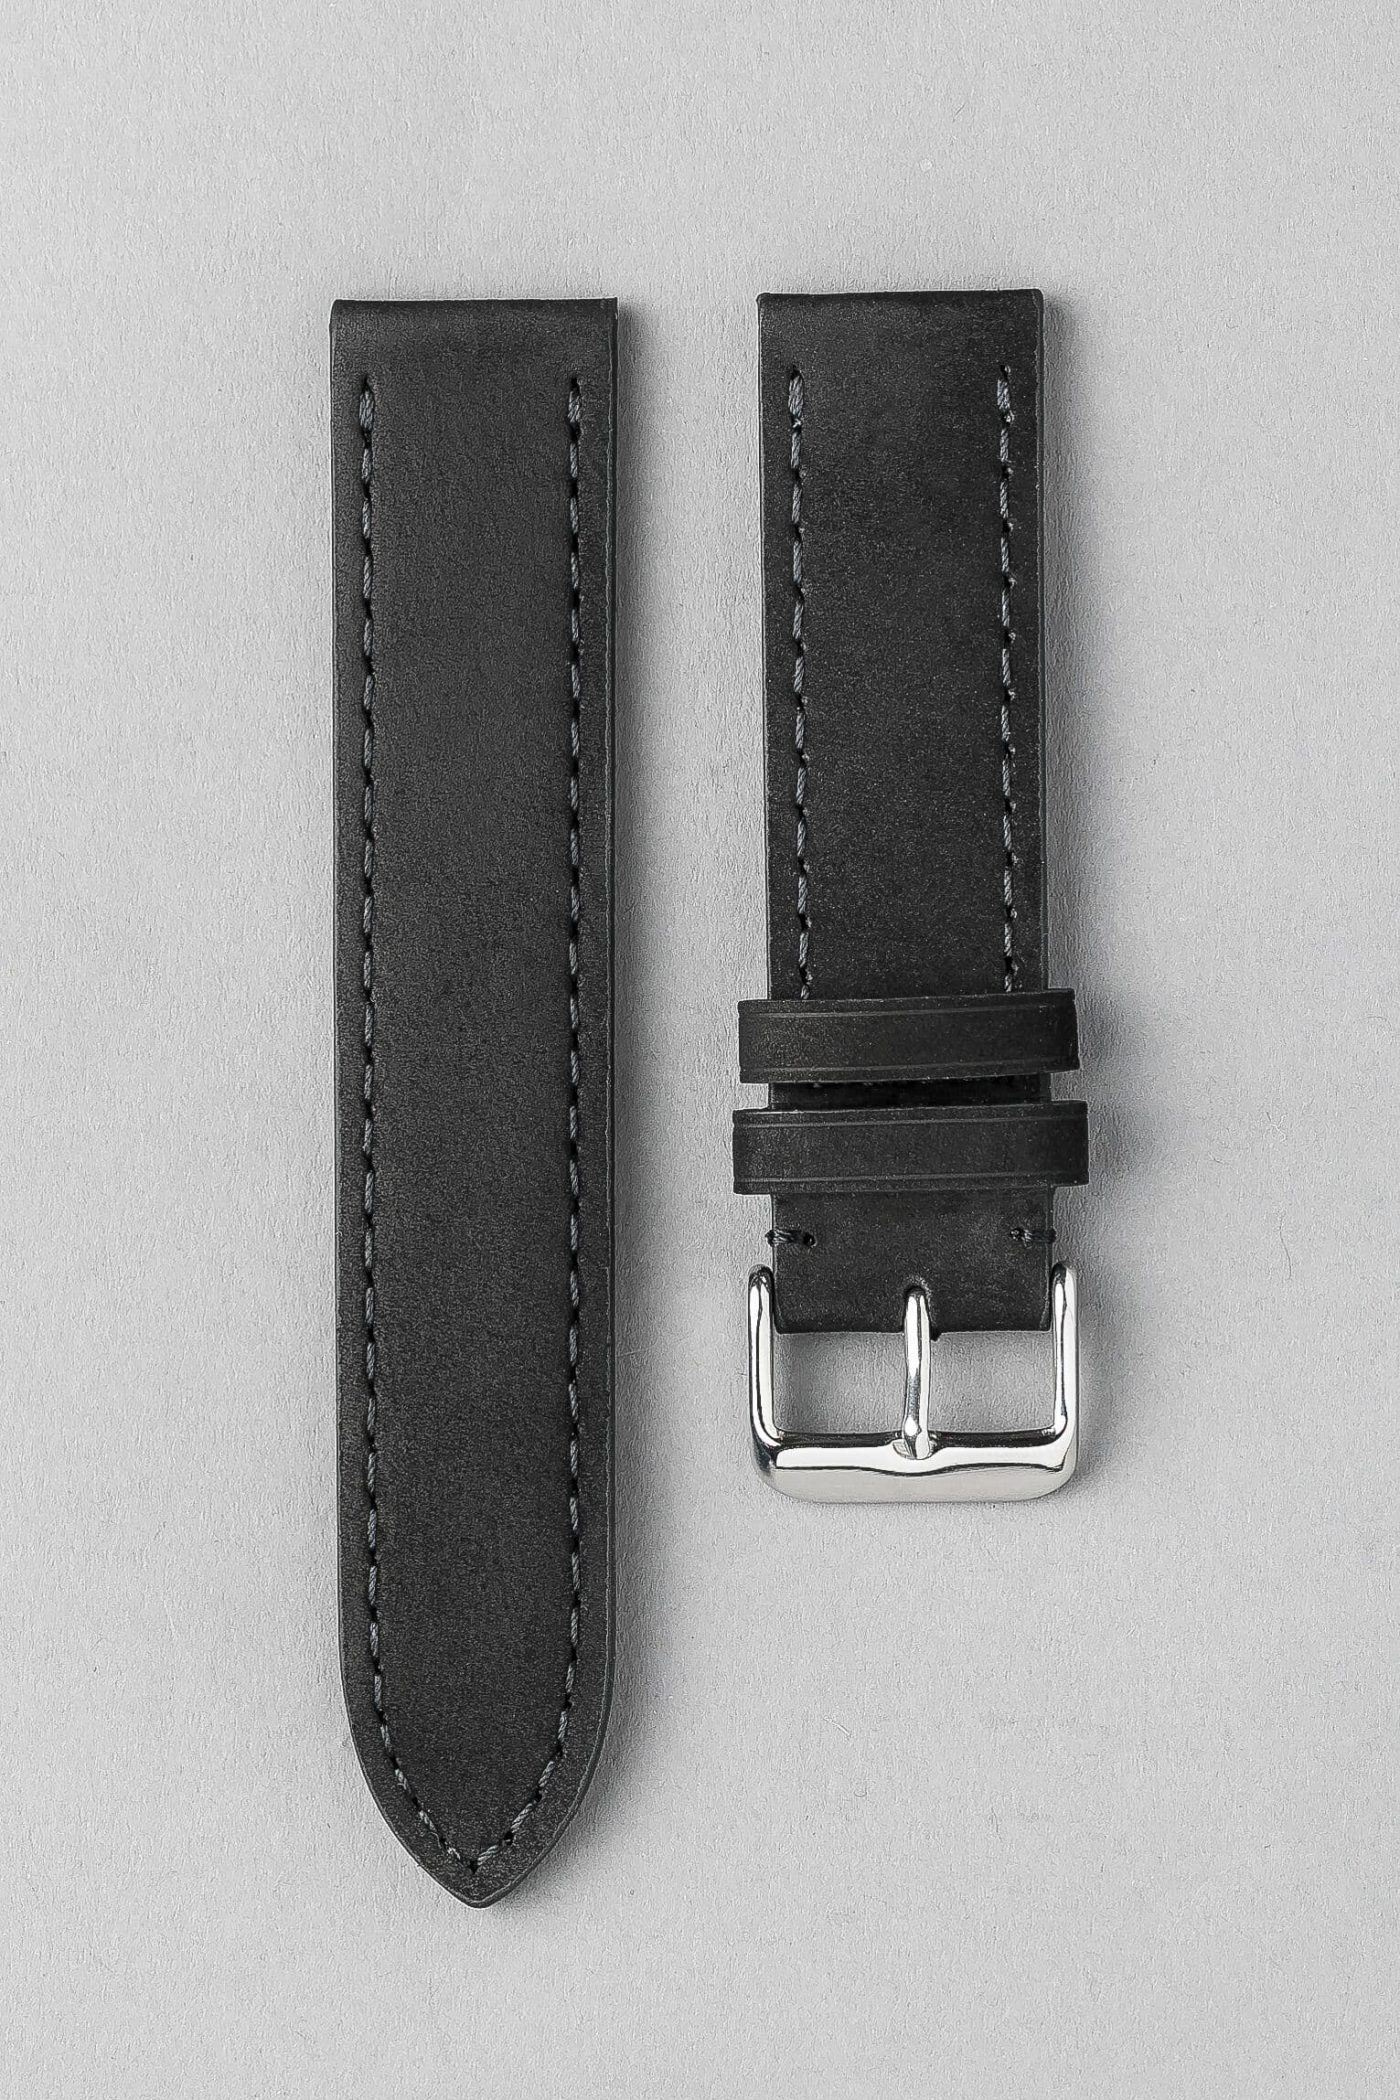 BC3-1 麂皮風格平身牛皮錶帶 - 黑色